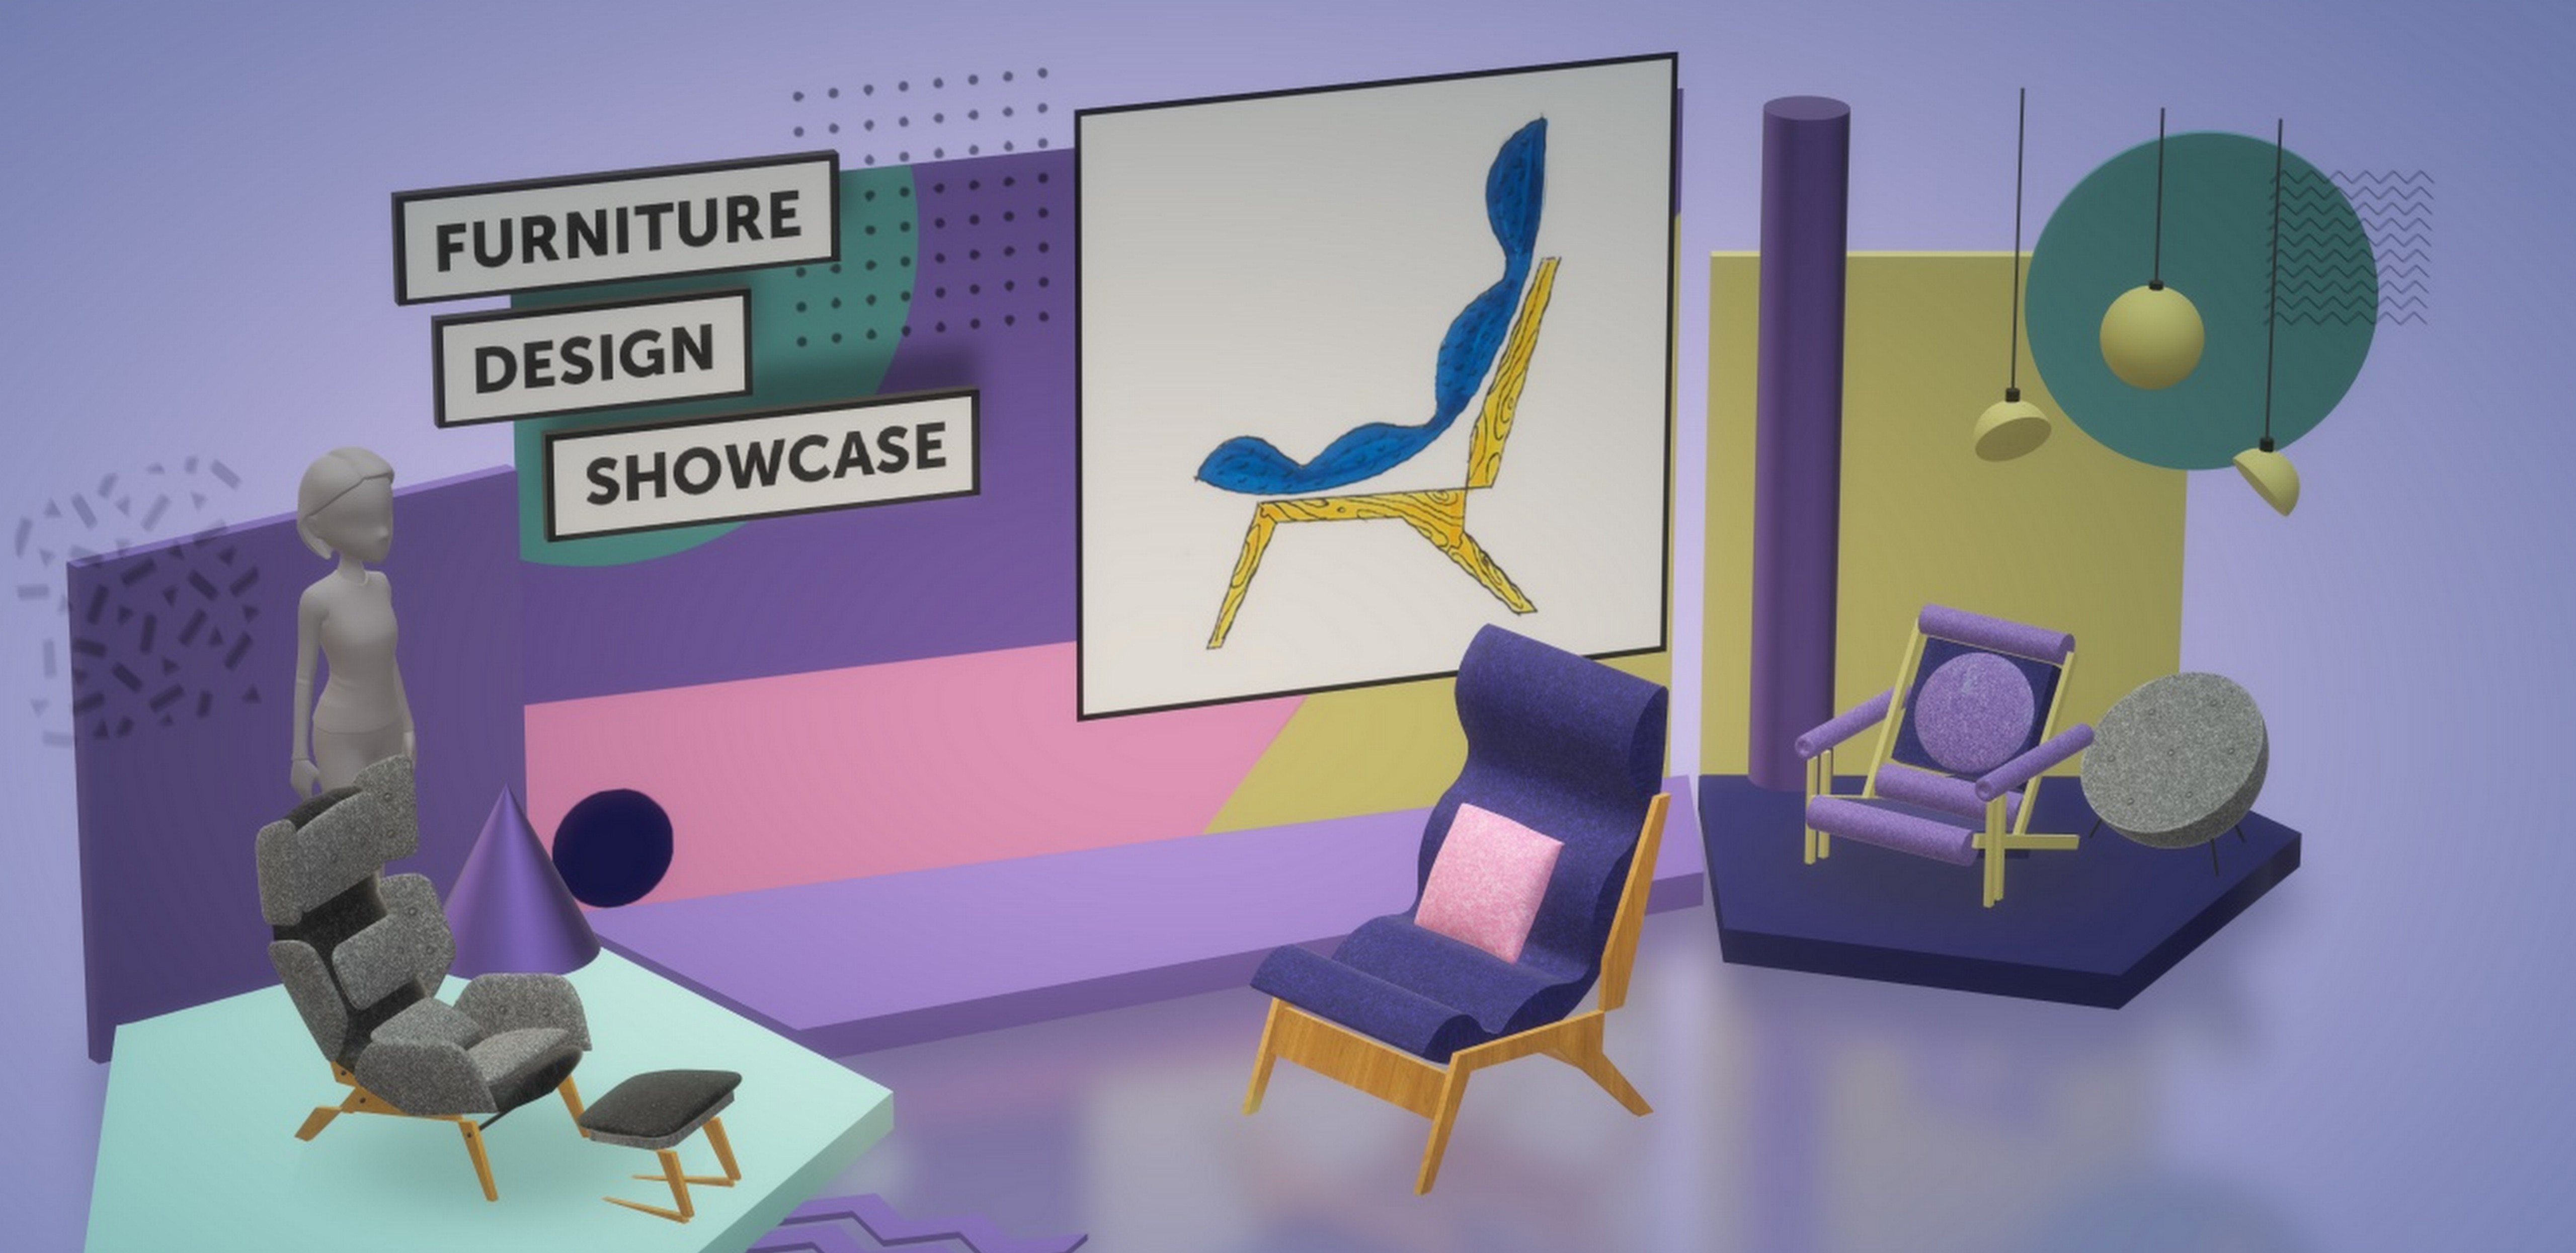 3D design of a furniture design showcase